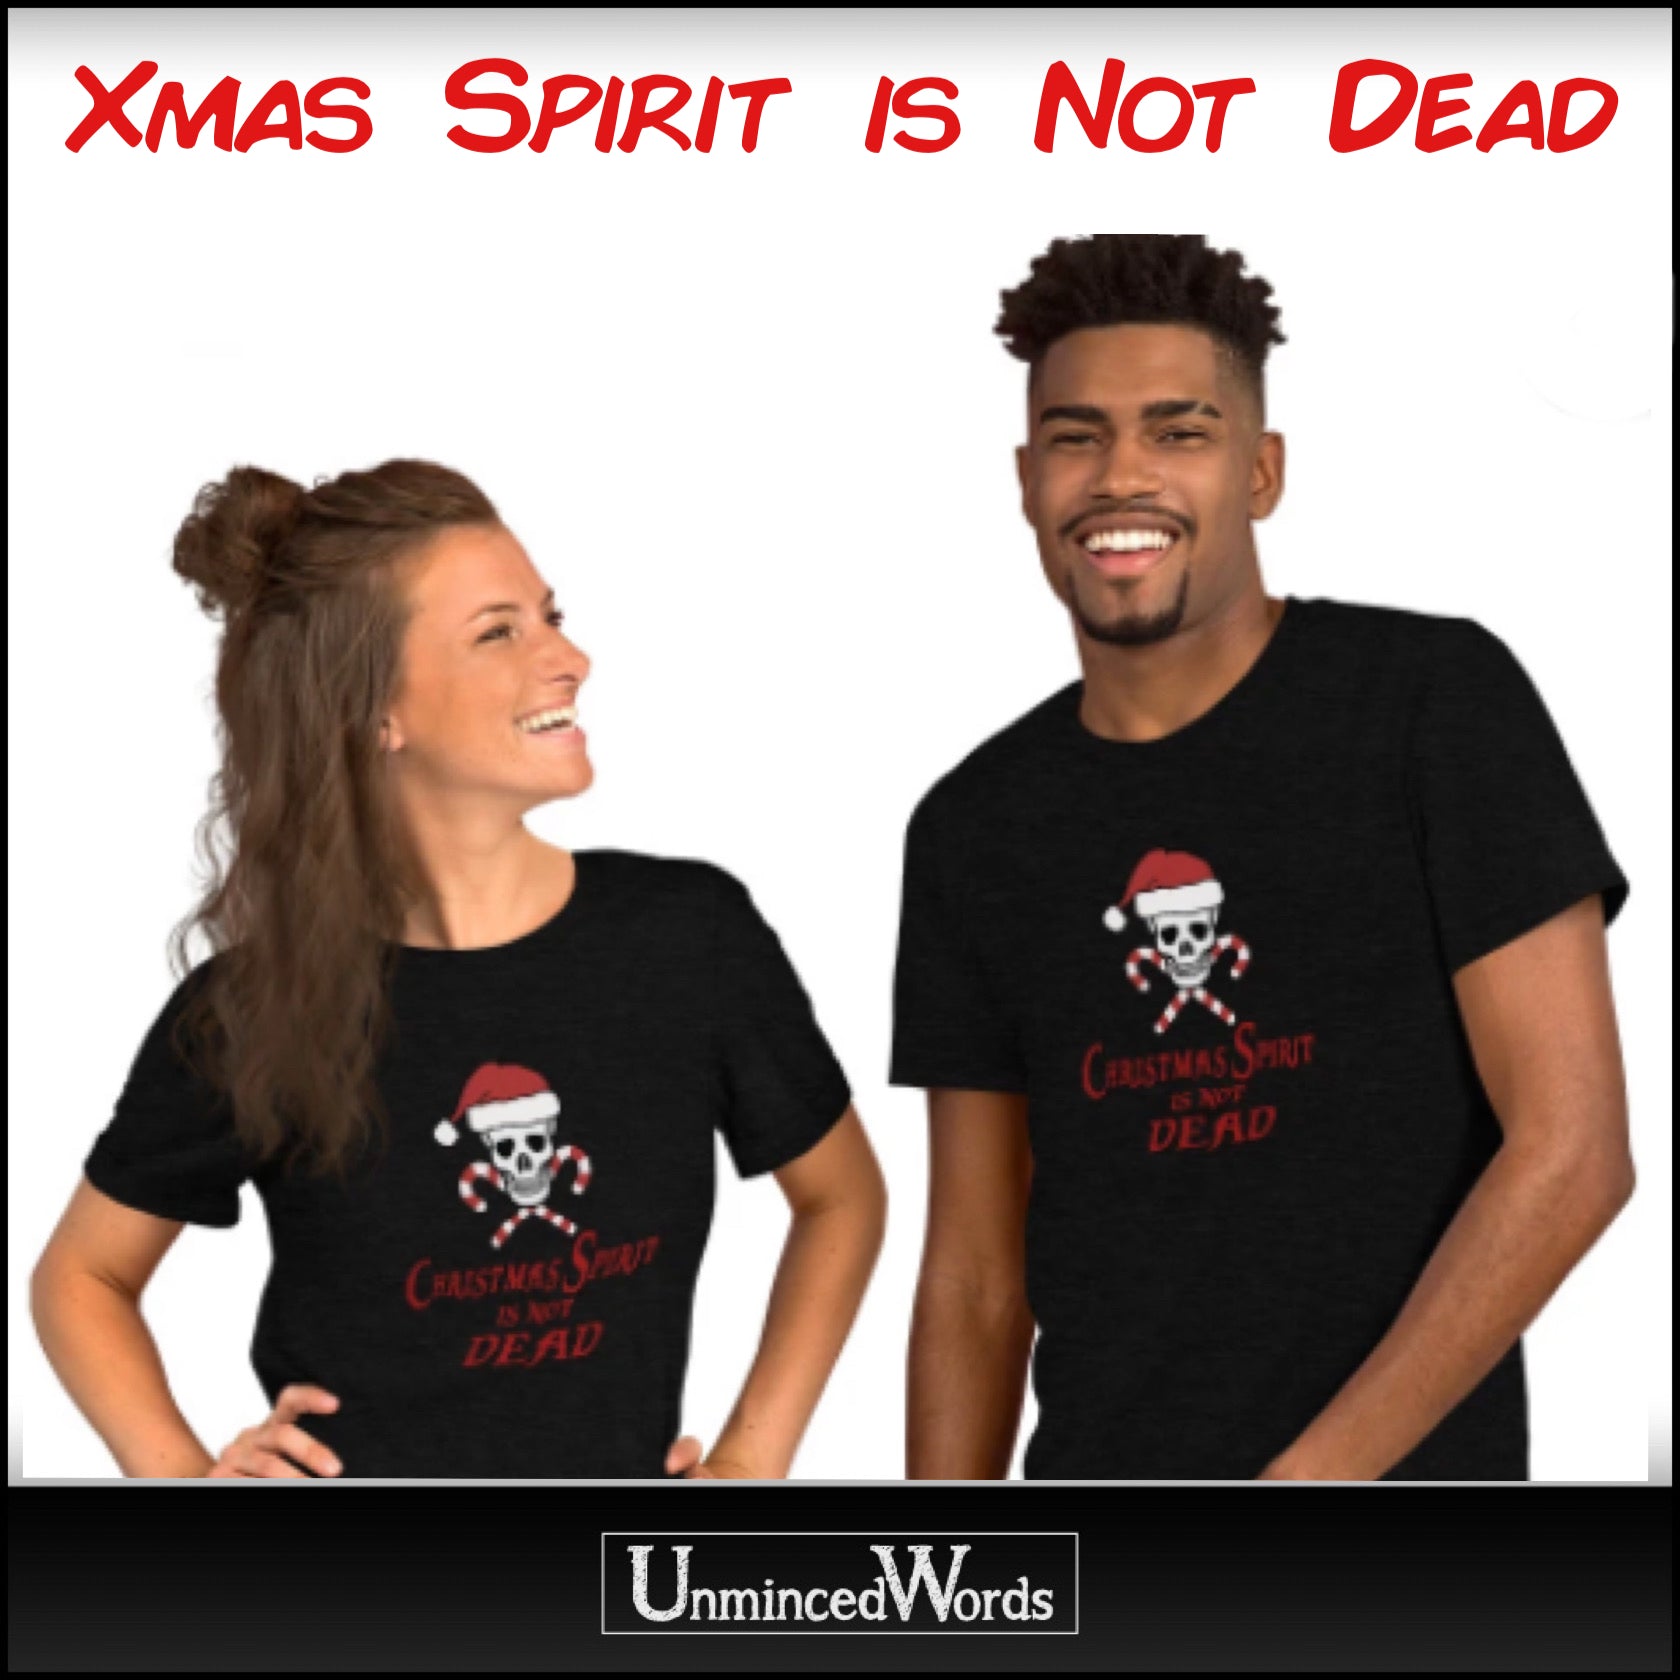 CHRISTMAS SPIRIT IS NOT DEAD DESIGN